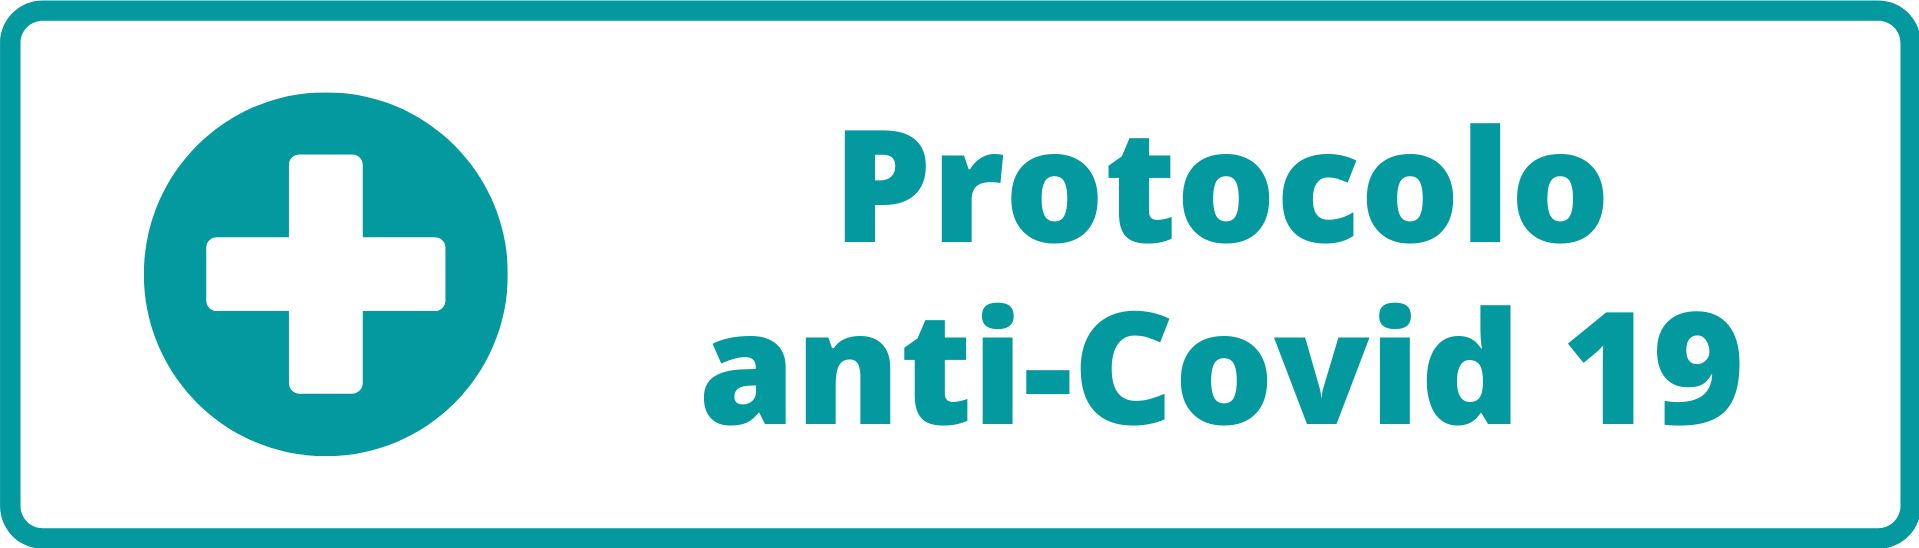 Banner protocolo anti-Covid 19